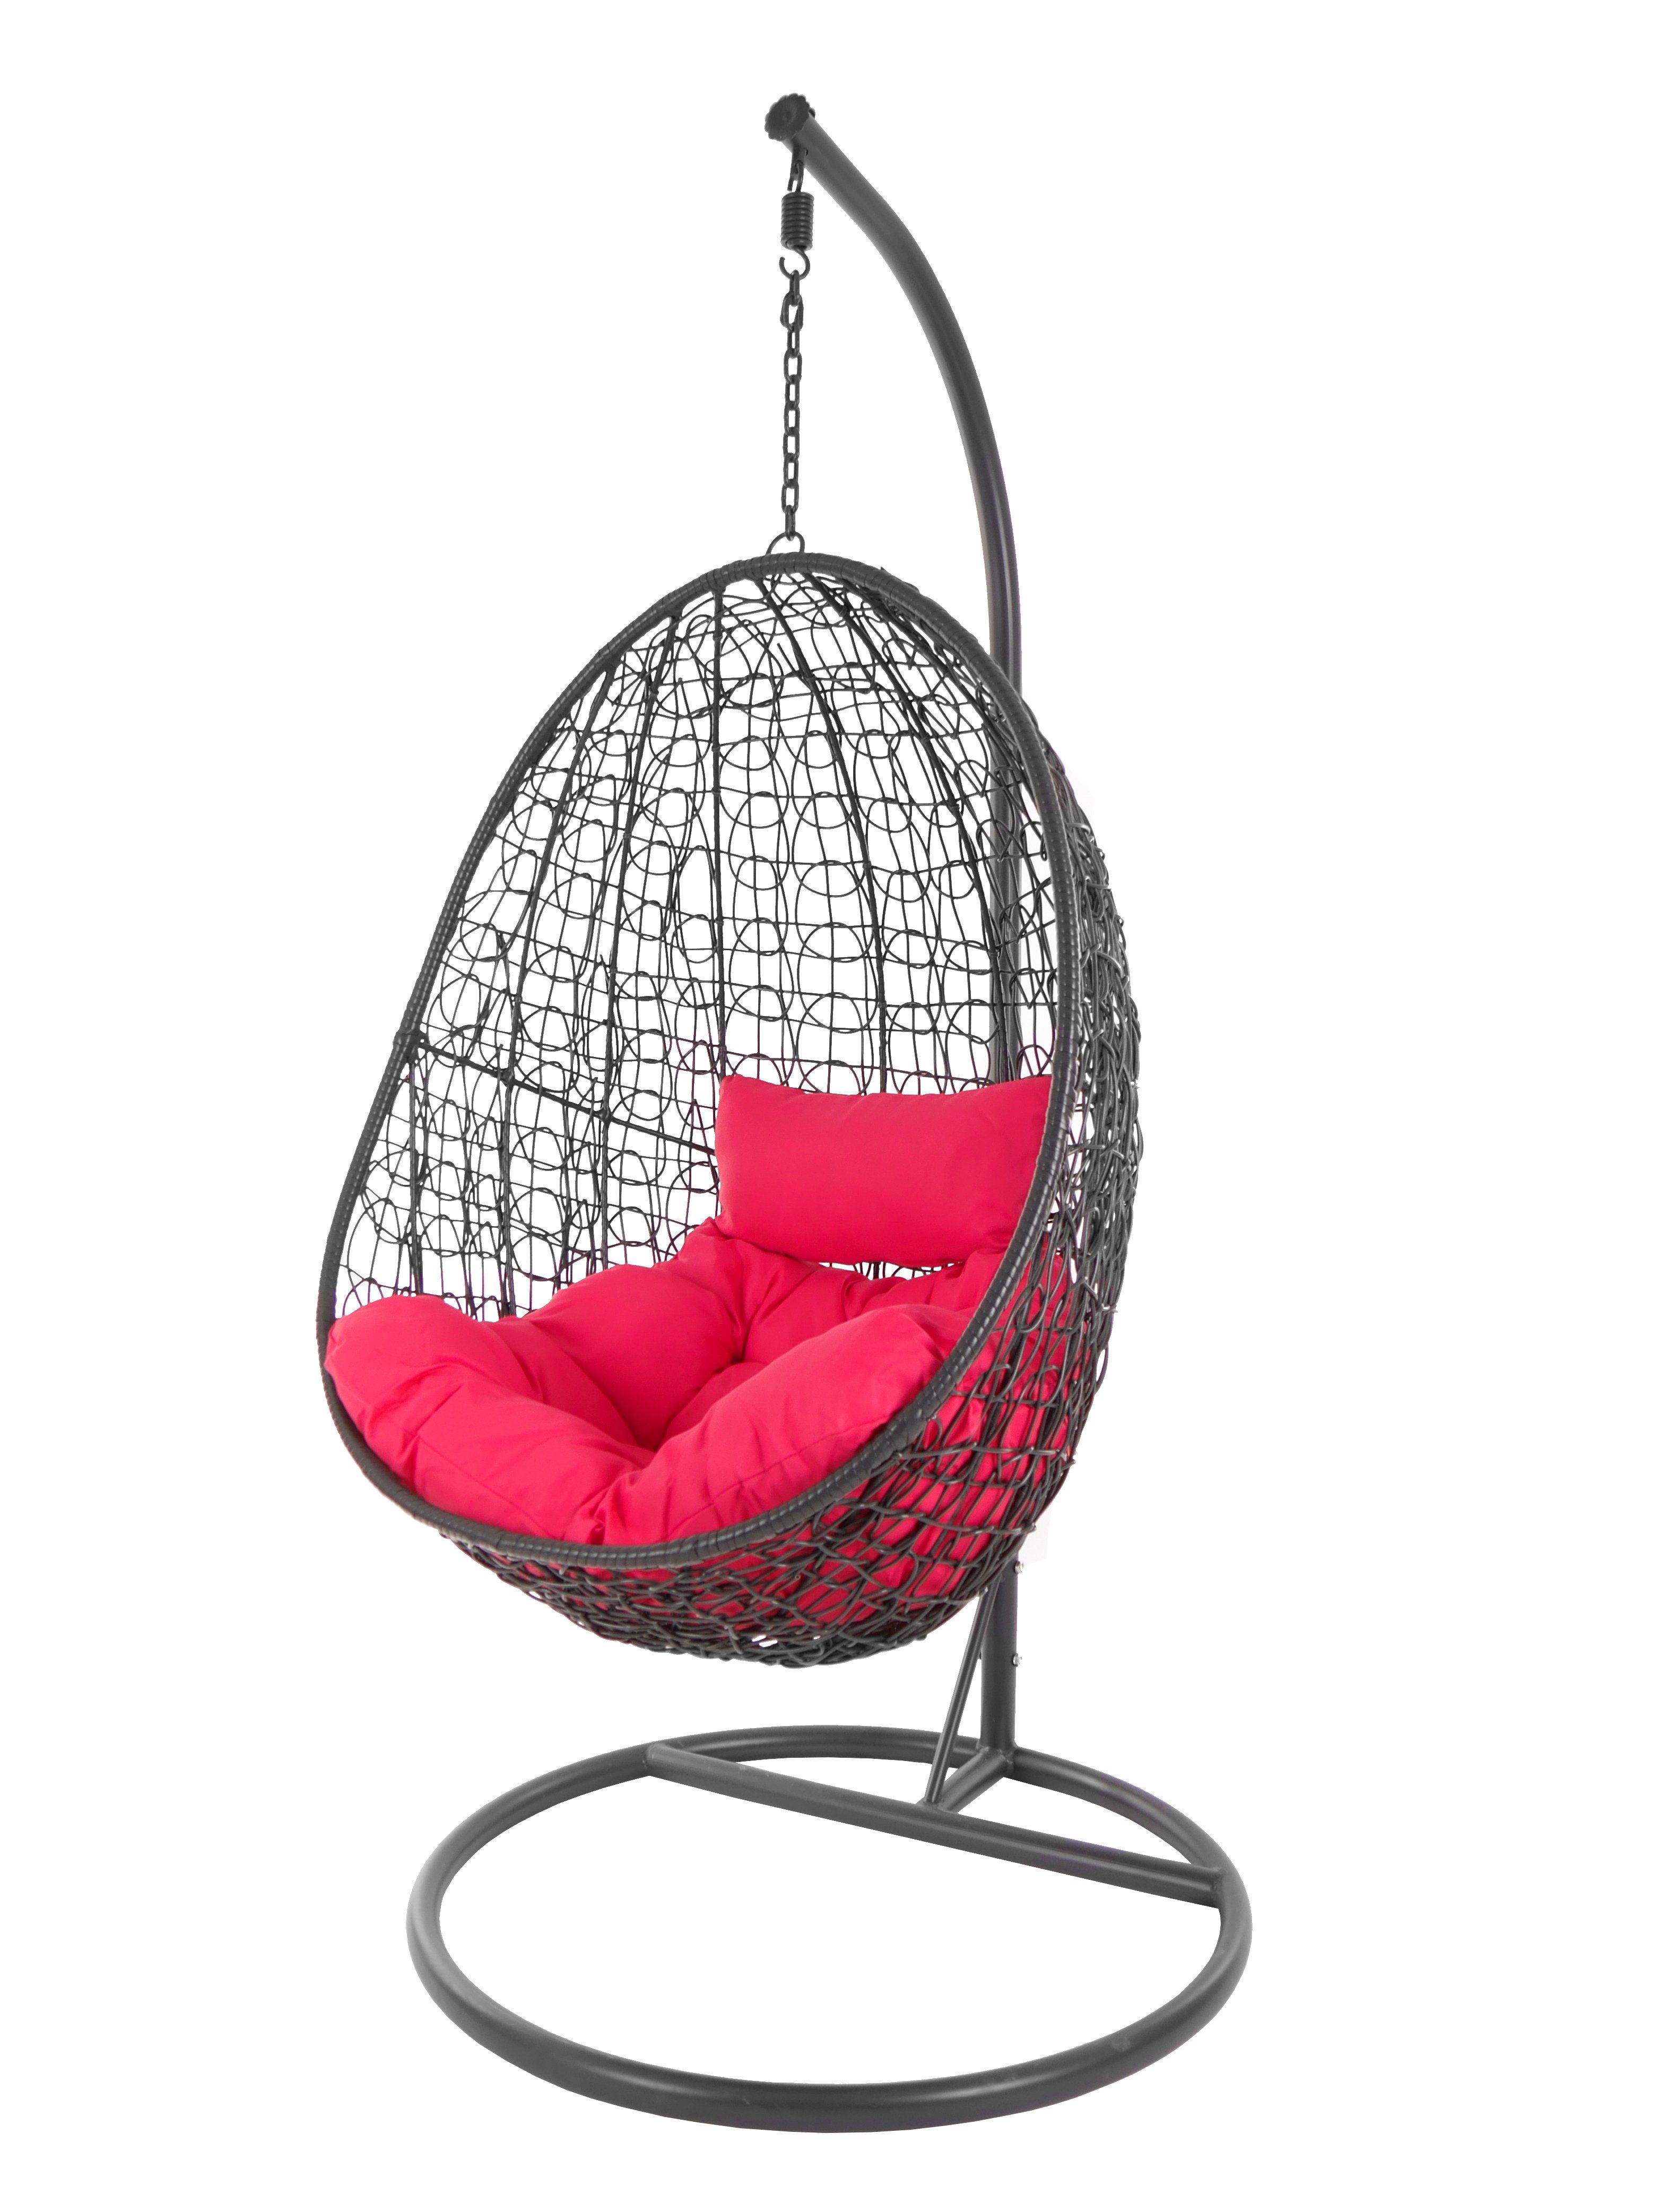 Capdepera hot und Gestell pink mit moderner anthrazit, (3333 Swing Kissen, pink) Loungemöbel Hängesessel Hängesessel KIDEO Chair, Schwebesessel